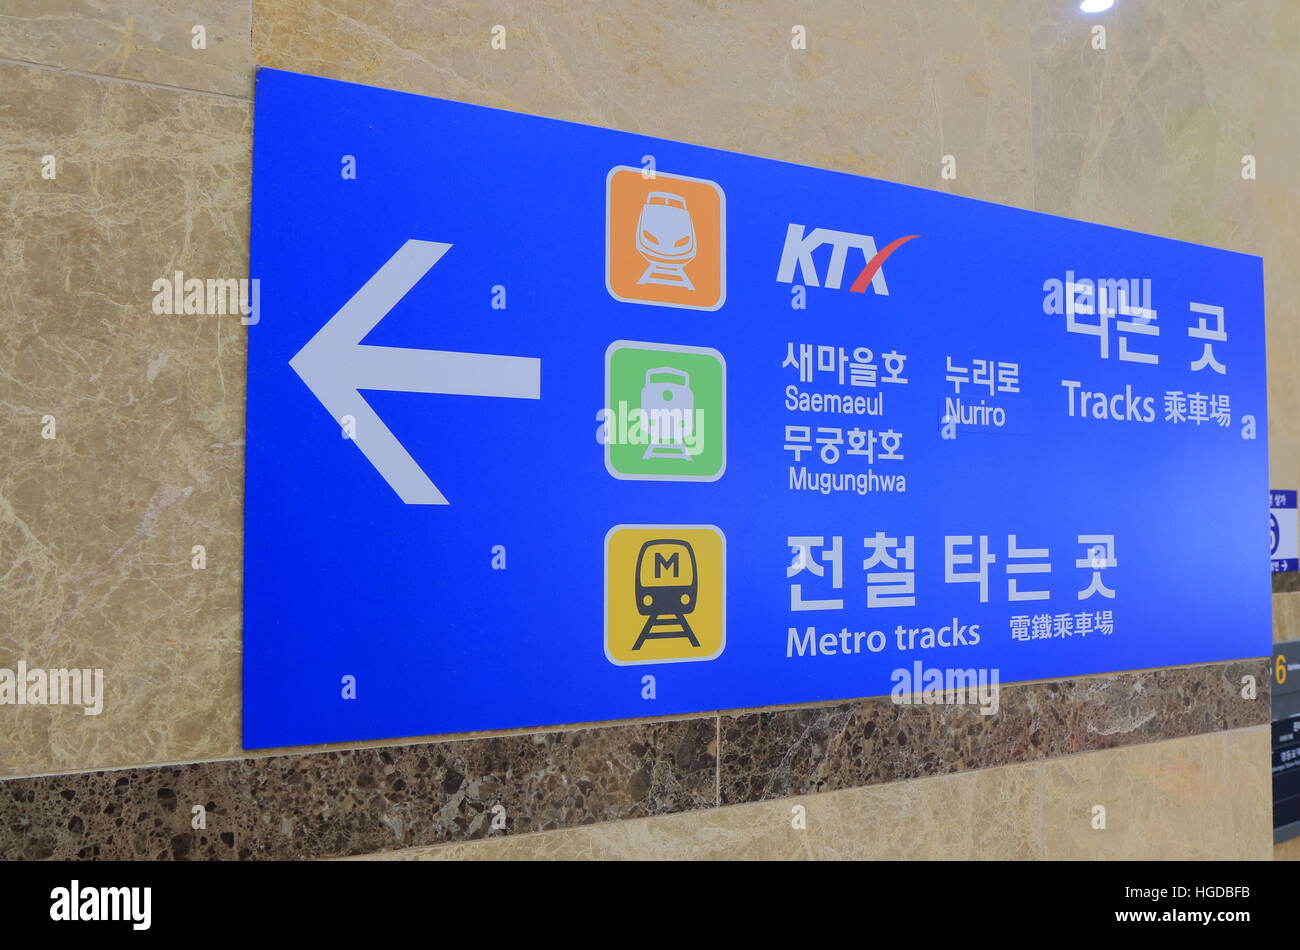 La scheda Informazioni visualizza le indicazioni per KTX, stazione ferroviaria e metropolitana di Seul in Corea del Sud. Foto Stock